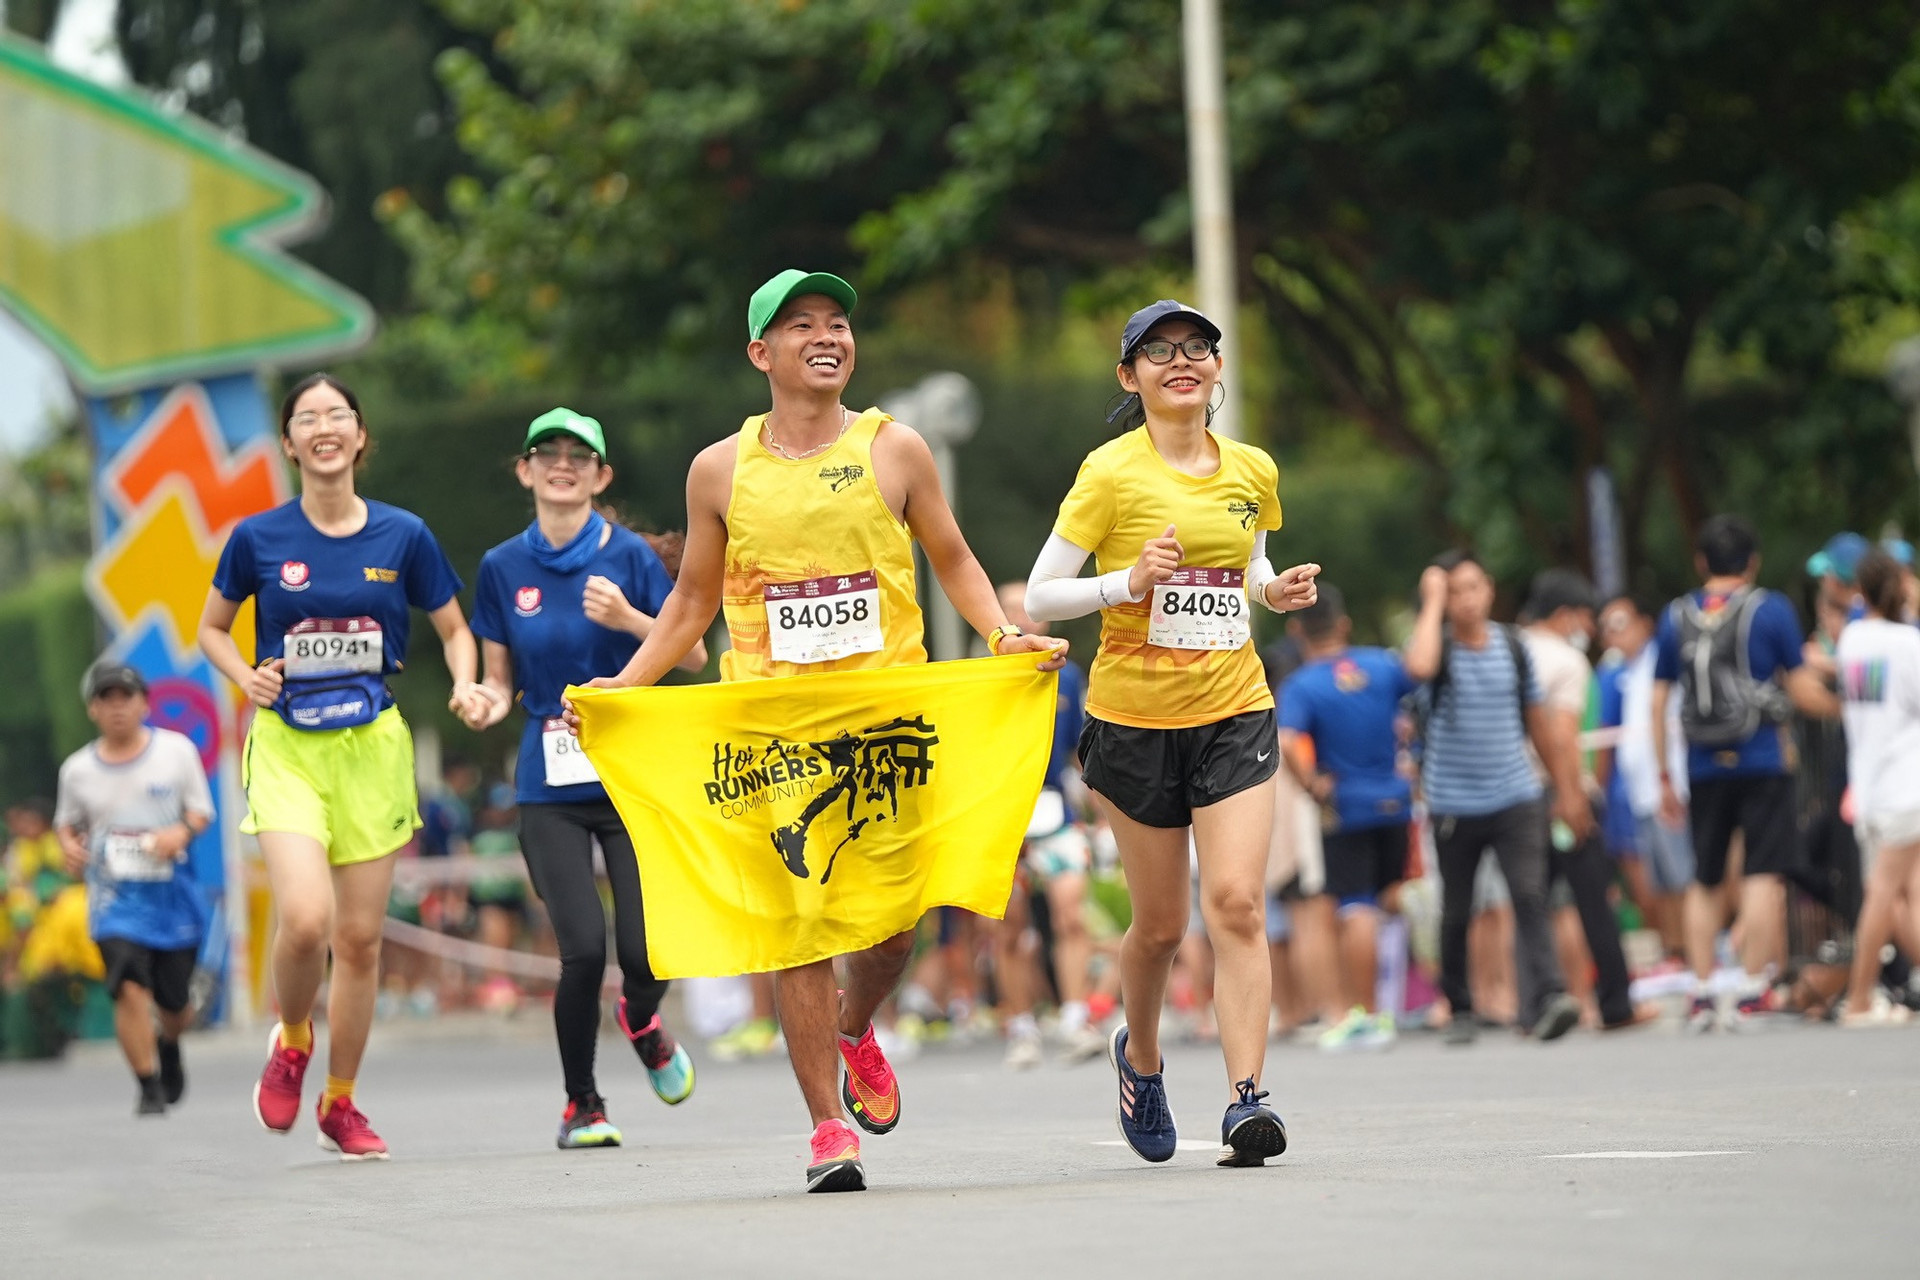 Cặp đôi Linh - Châu về đích cùng nhau trong giải chạy VnExpress Marathon Nha Trang năm 2022.